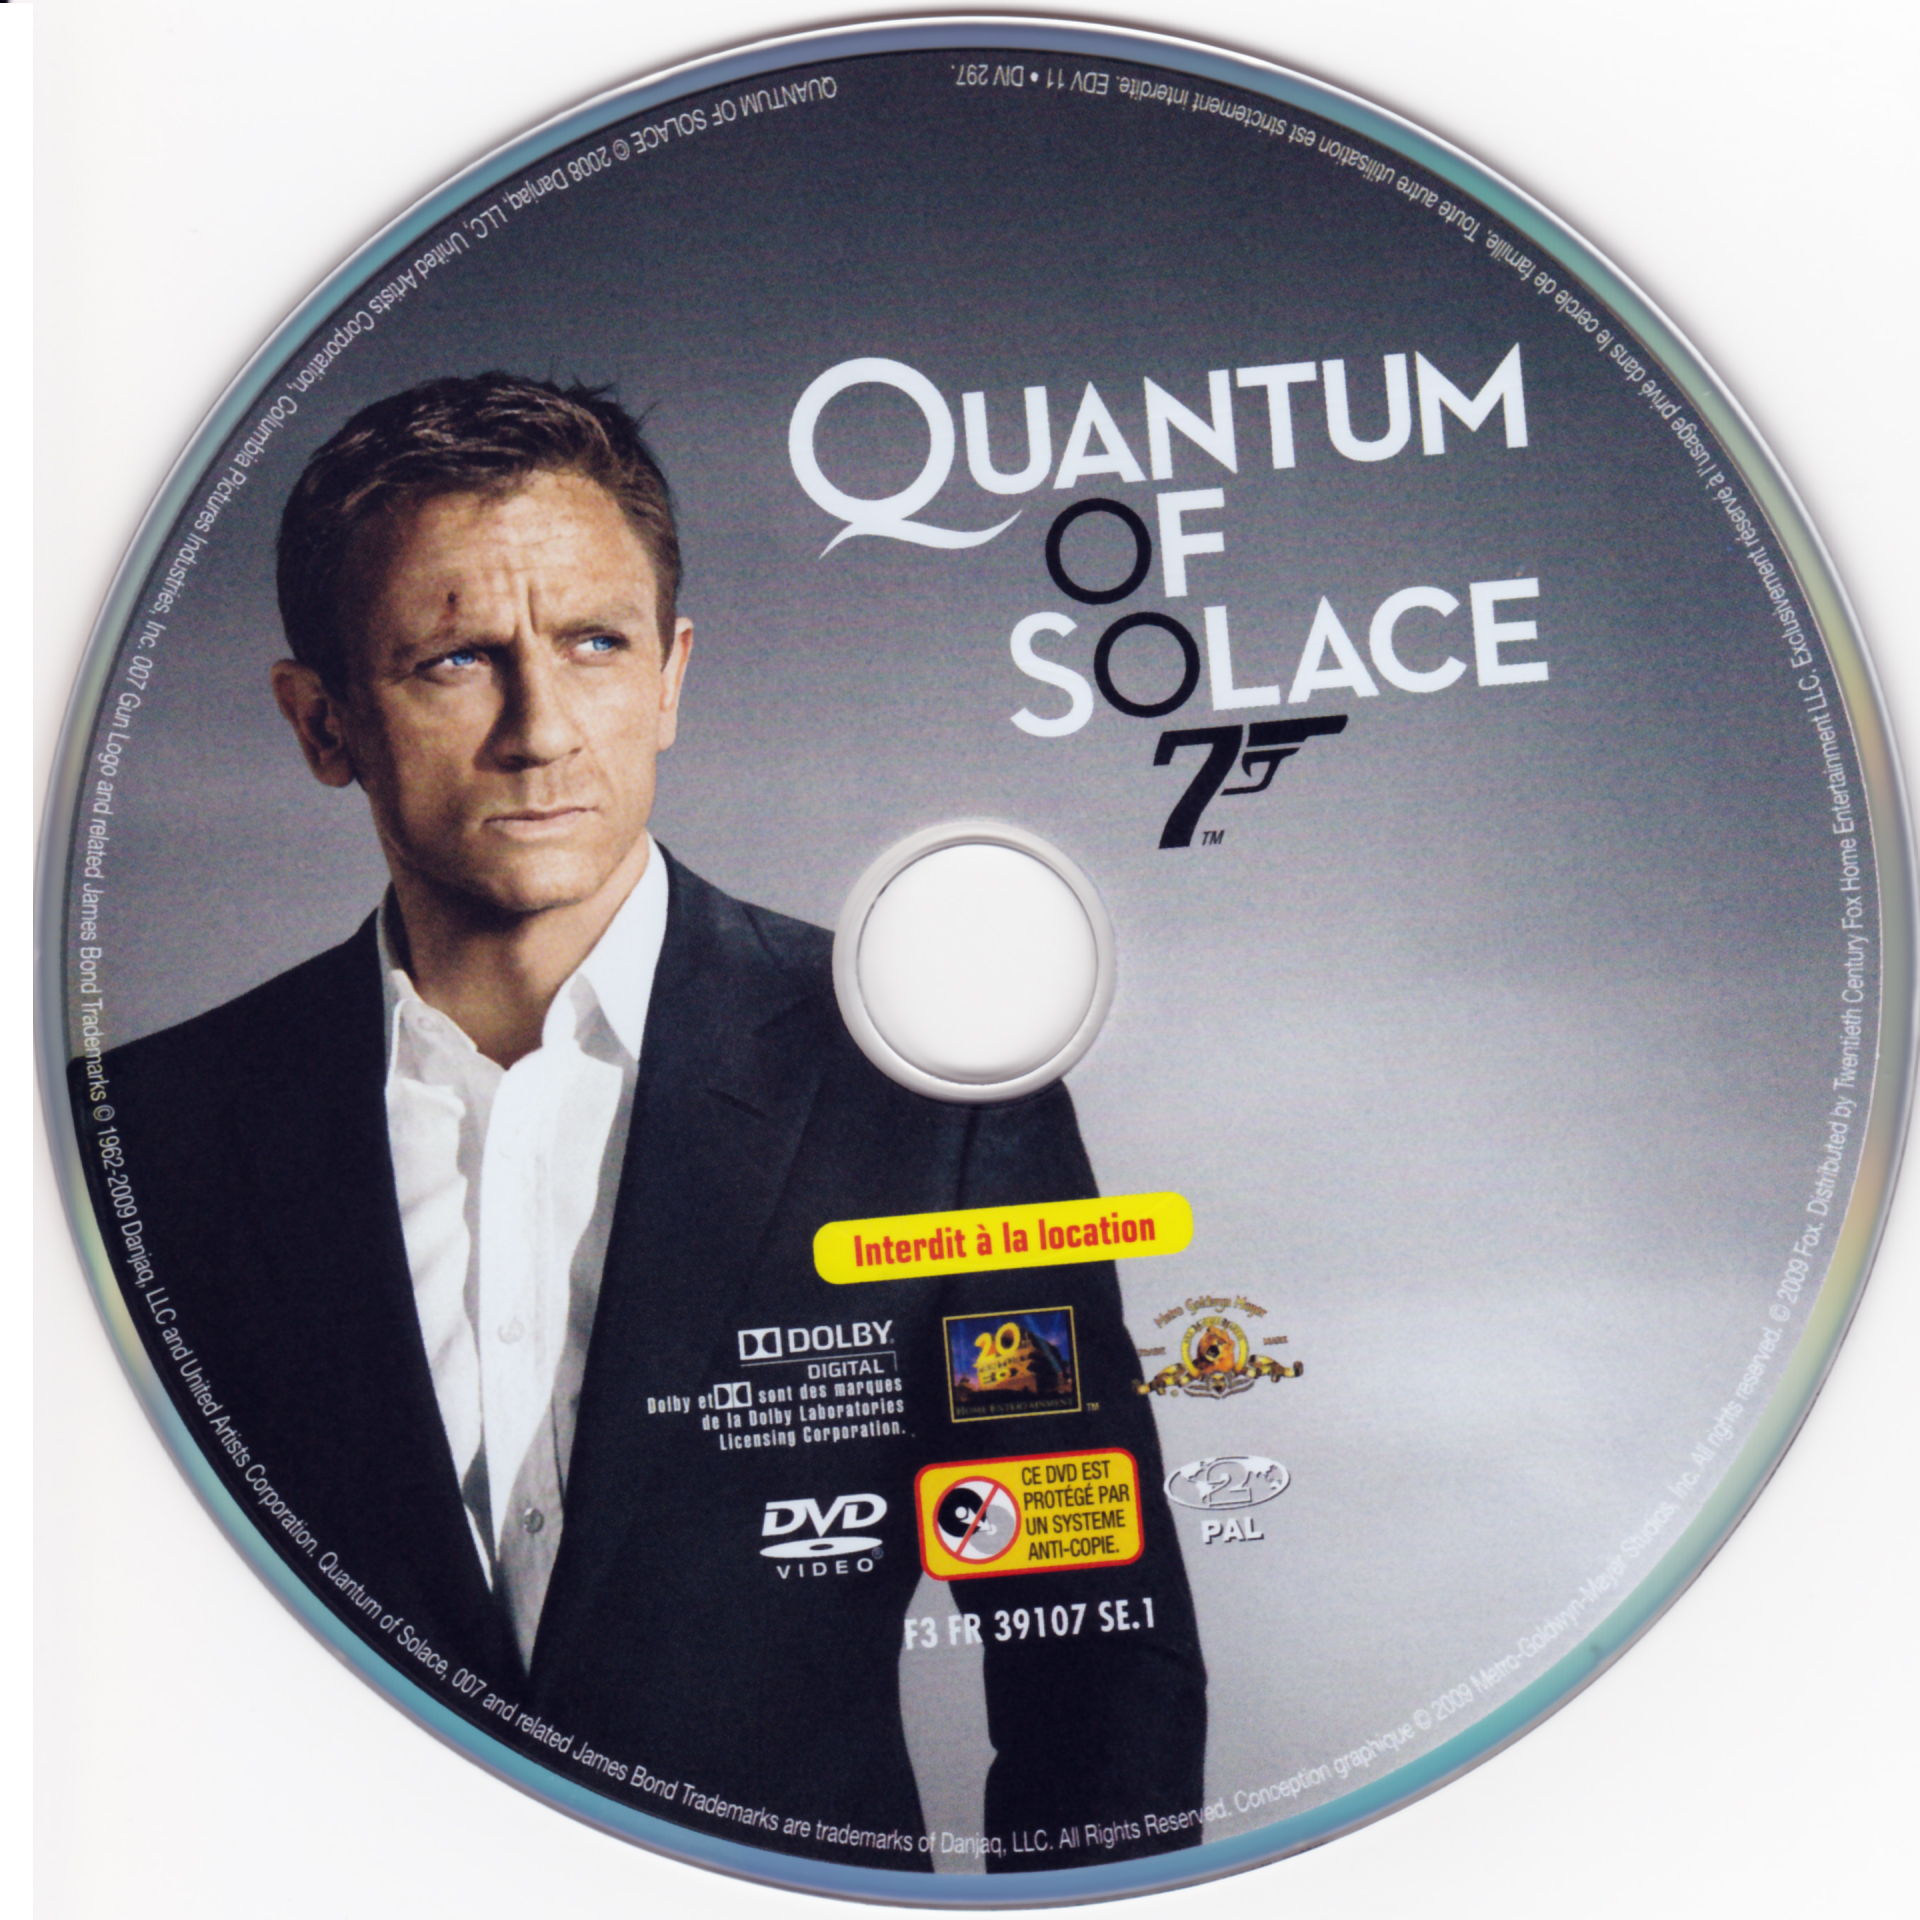 James Bond 007 Quantum of solace v2